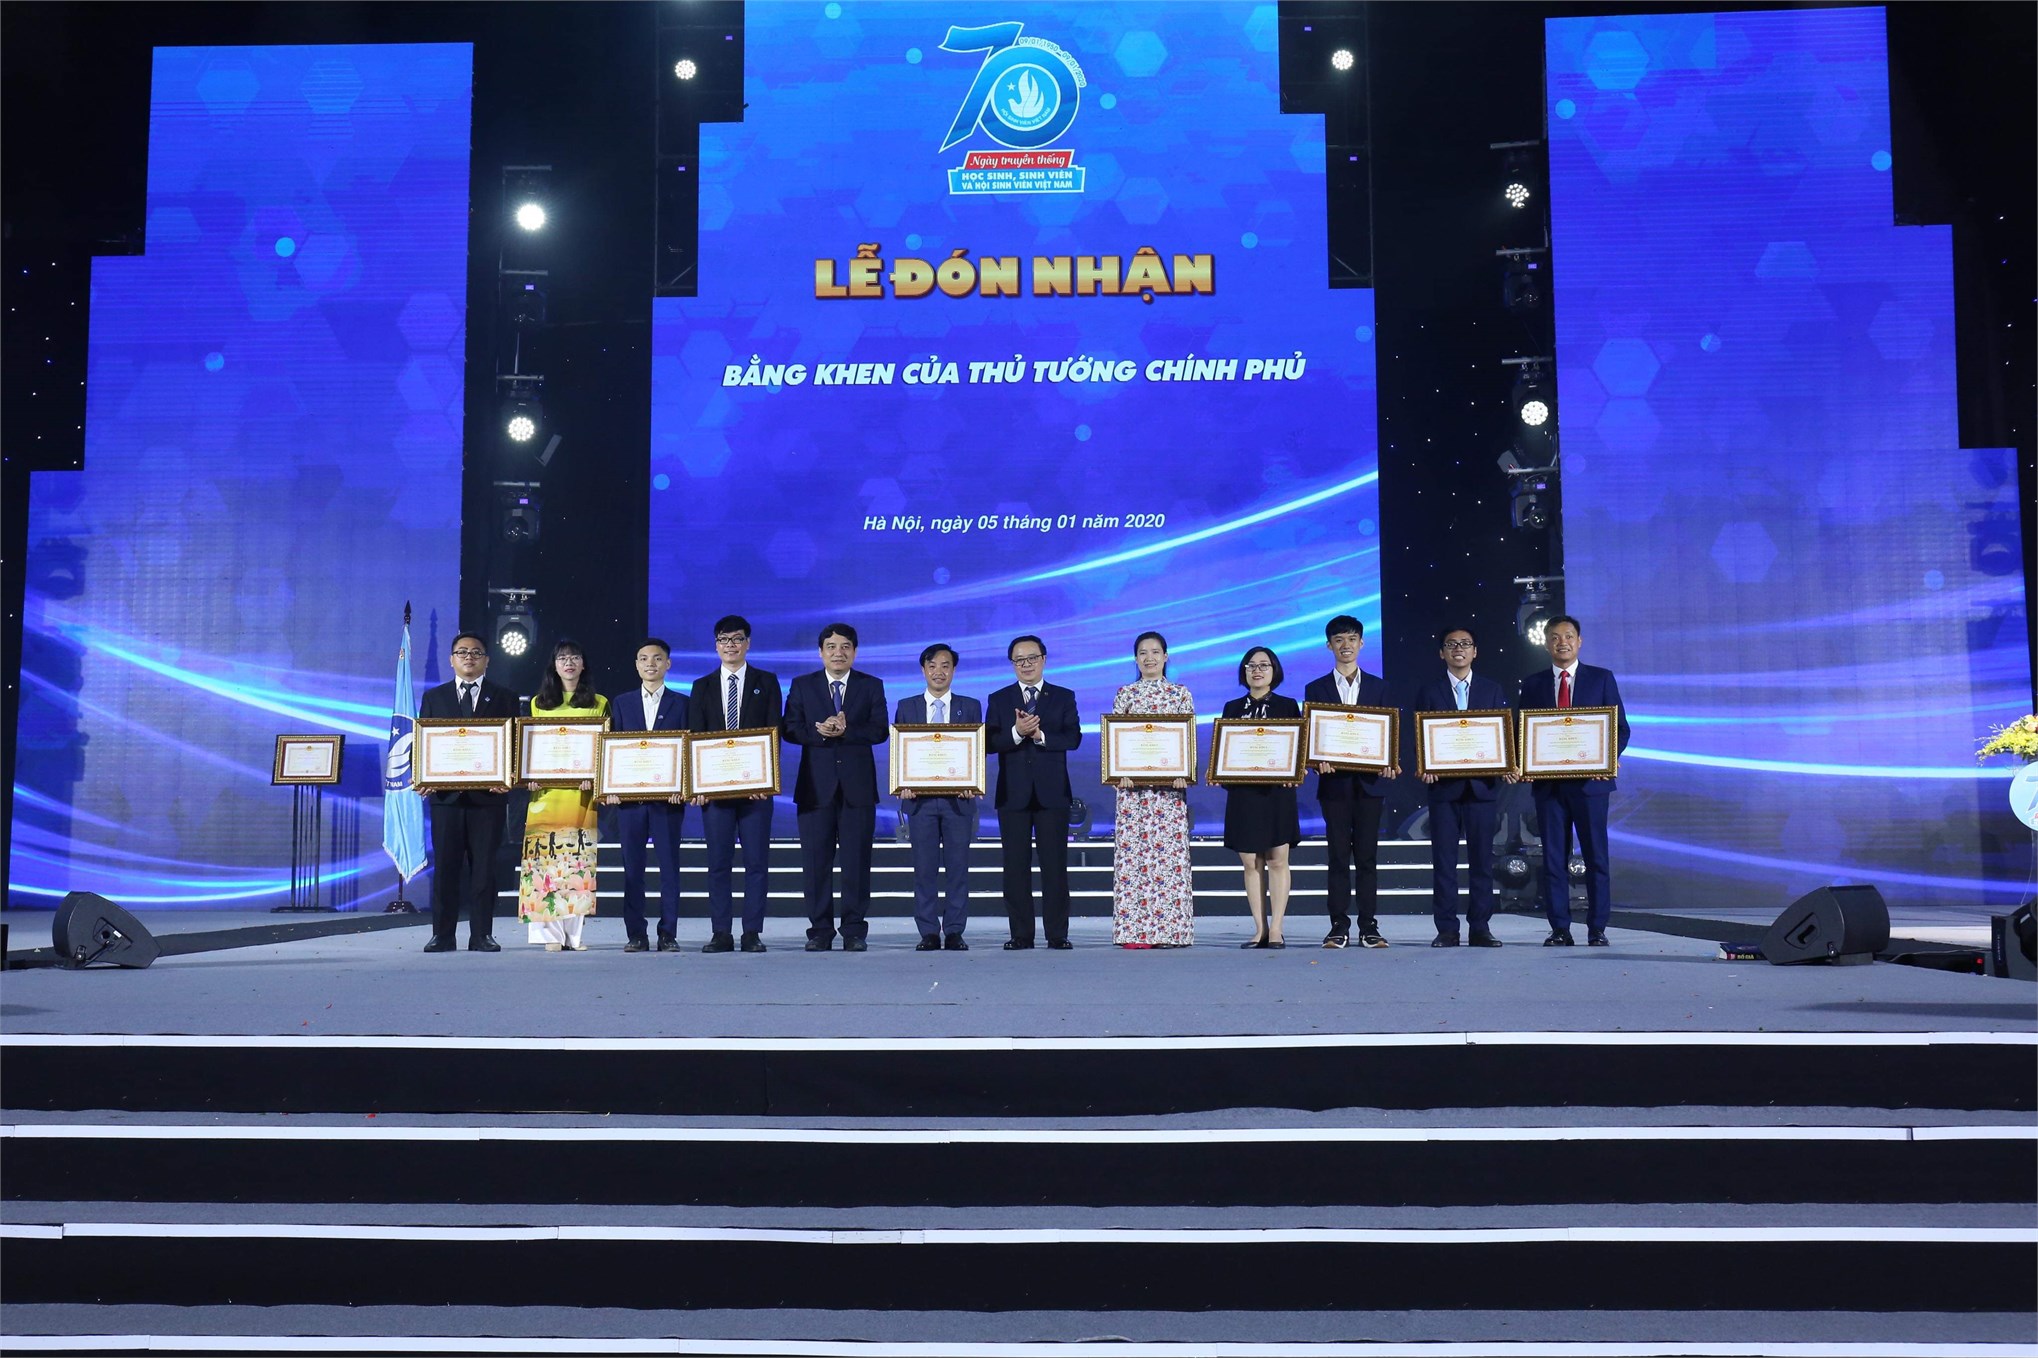 Hội Sinh viên Trường Đại học Công nghiệp Hà Nội vinh dự nhận Bằng khen của Thủ tướng Chính phủ